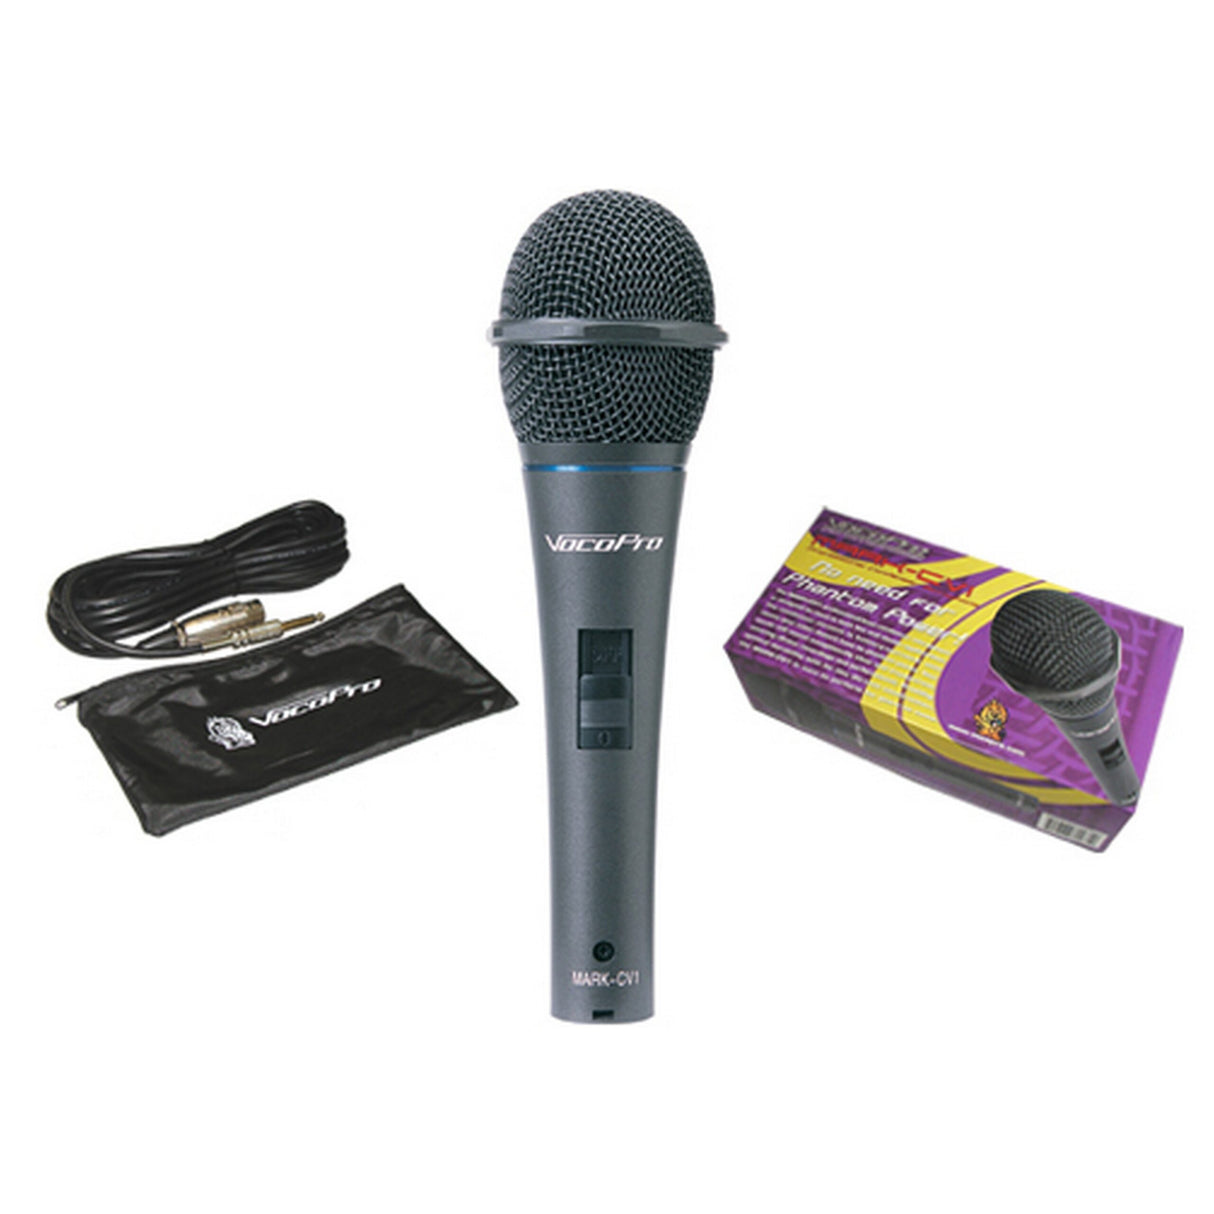 VocoPro MARK-CV1 Battery Powered Handheld Condenser Microphone